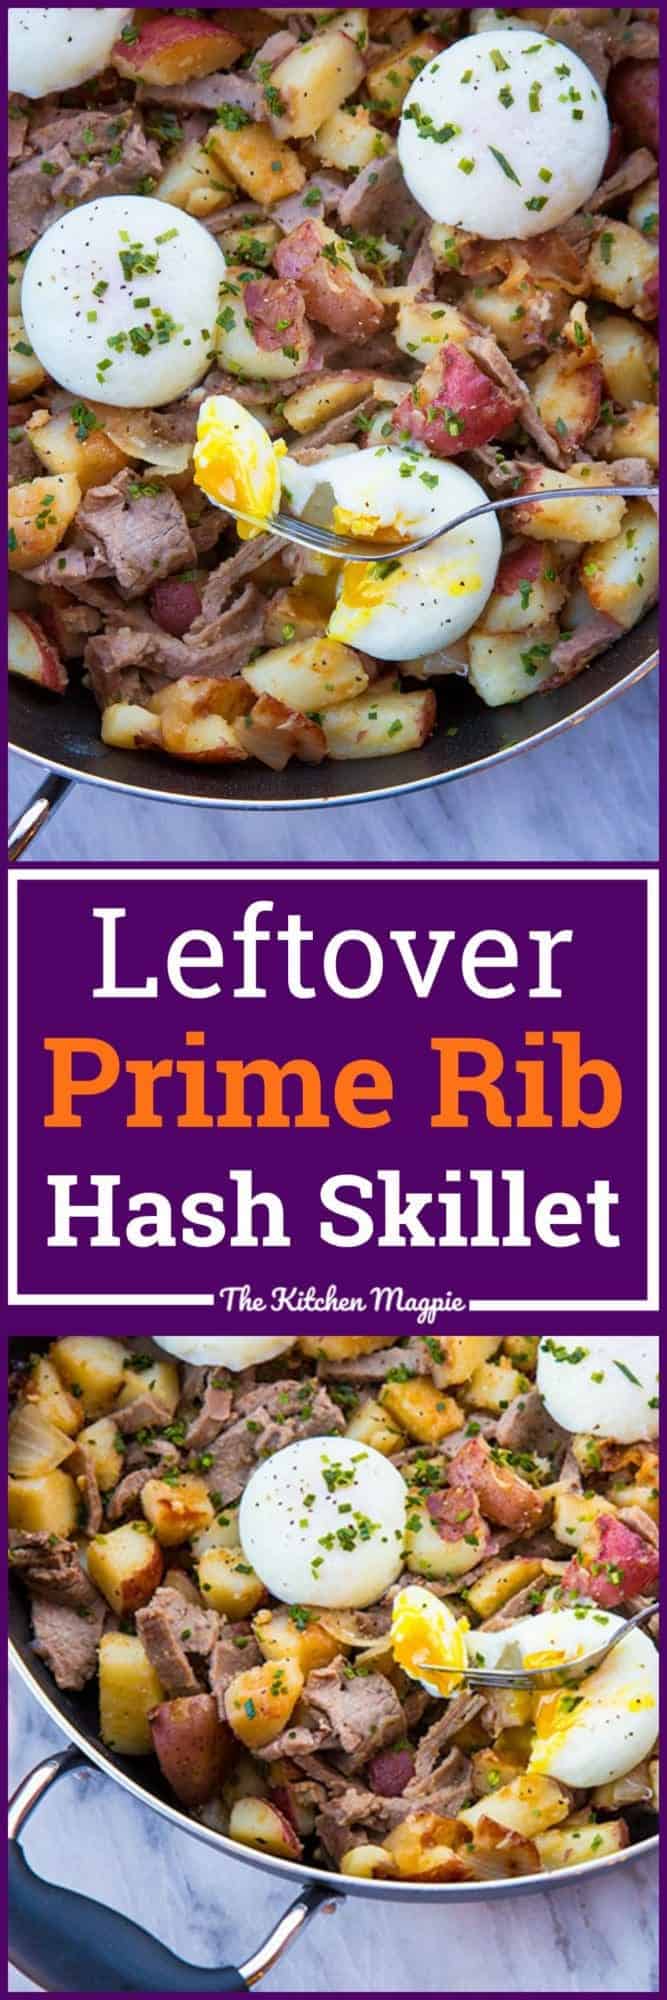 Leftover Prime Rib Hash Skillet The Kitchen Magpie